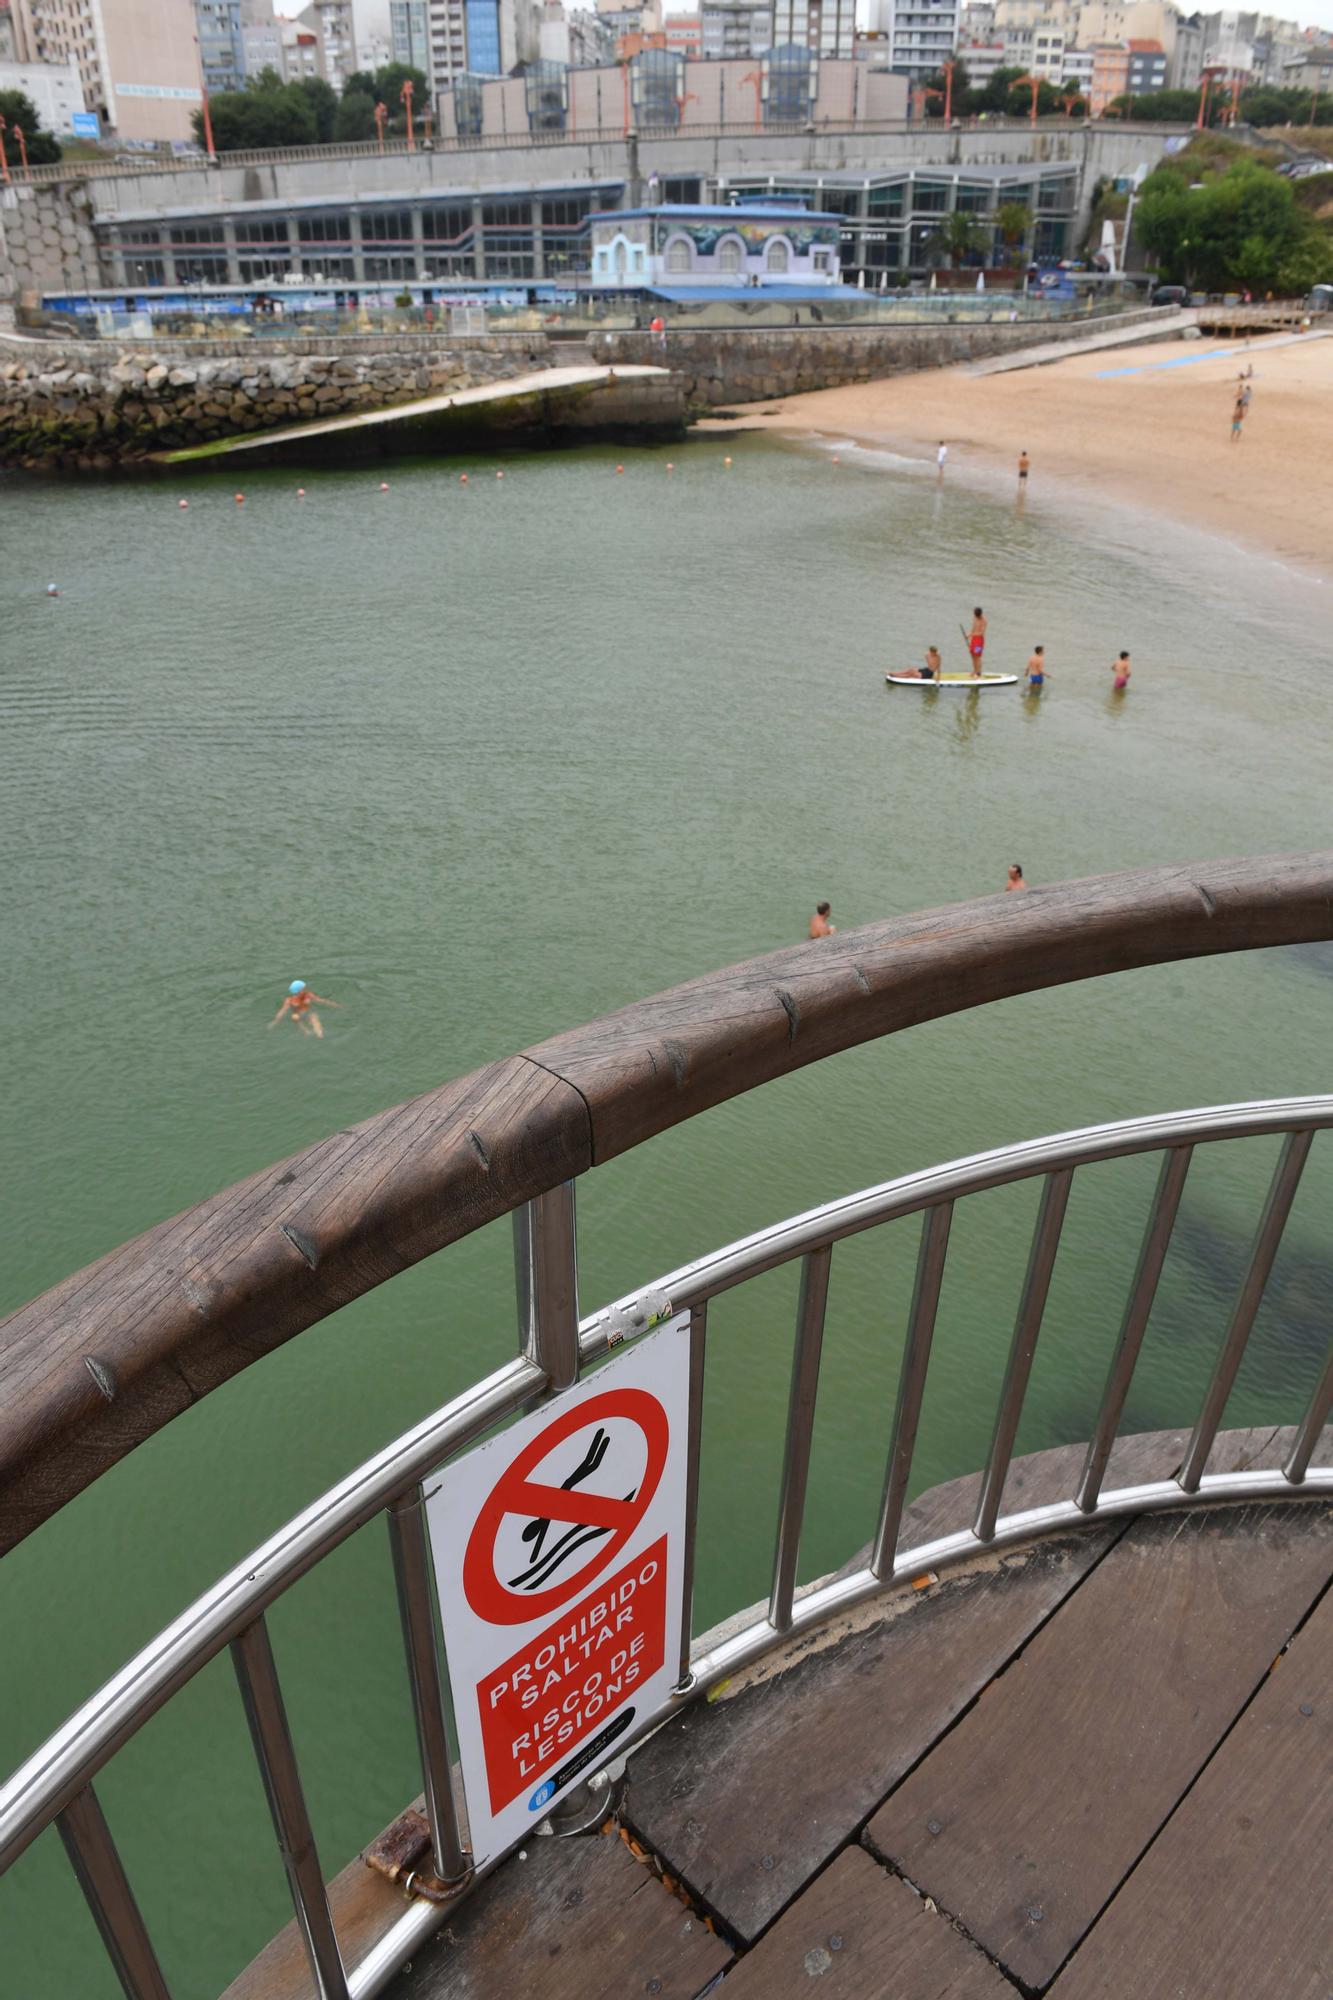 Nuevas señales de saltos prohibidos en la playa de San Amaro